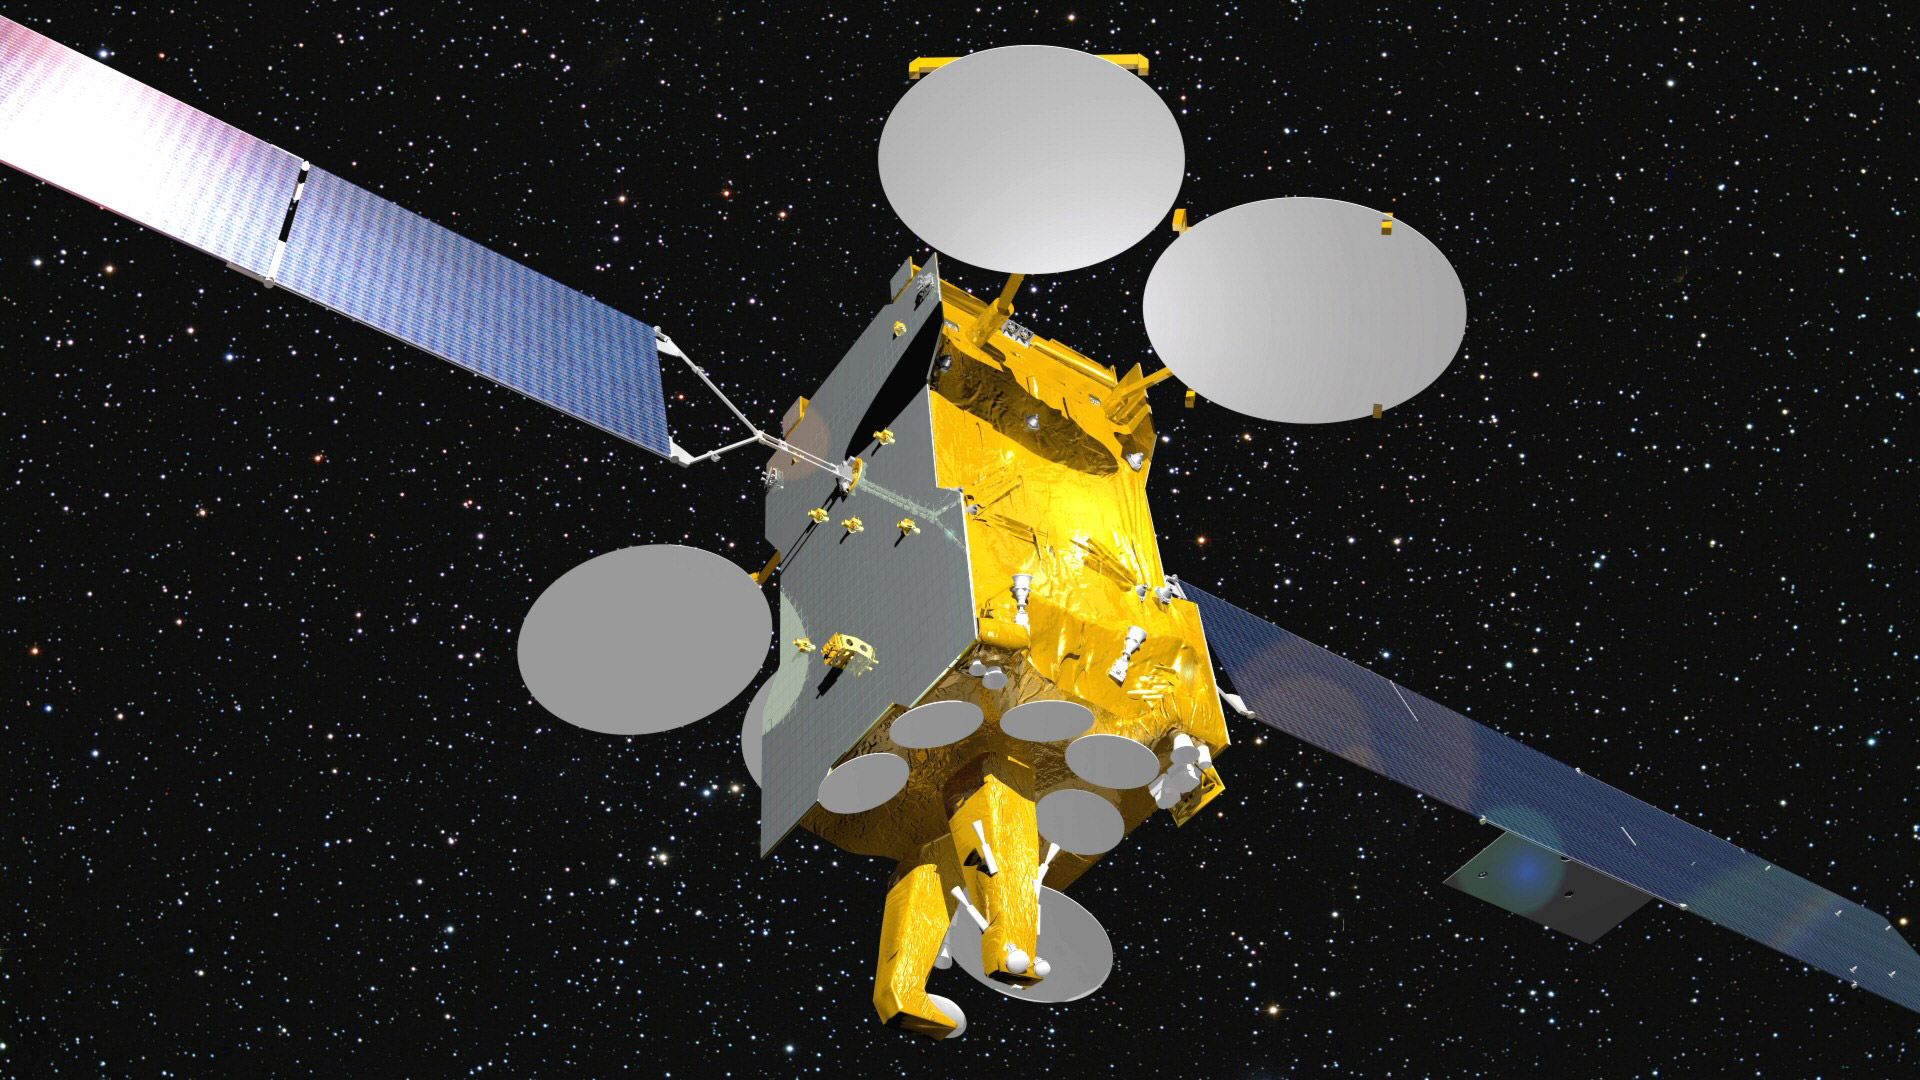 Le satellite Eutelsat 3B complétera en 2014 l'offre de service fournie par Eutelsat, premier opérateur européen et l’un des trois premiers opérateurs mondiaux de services fixes par satellite. © Astrium